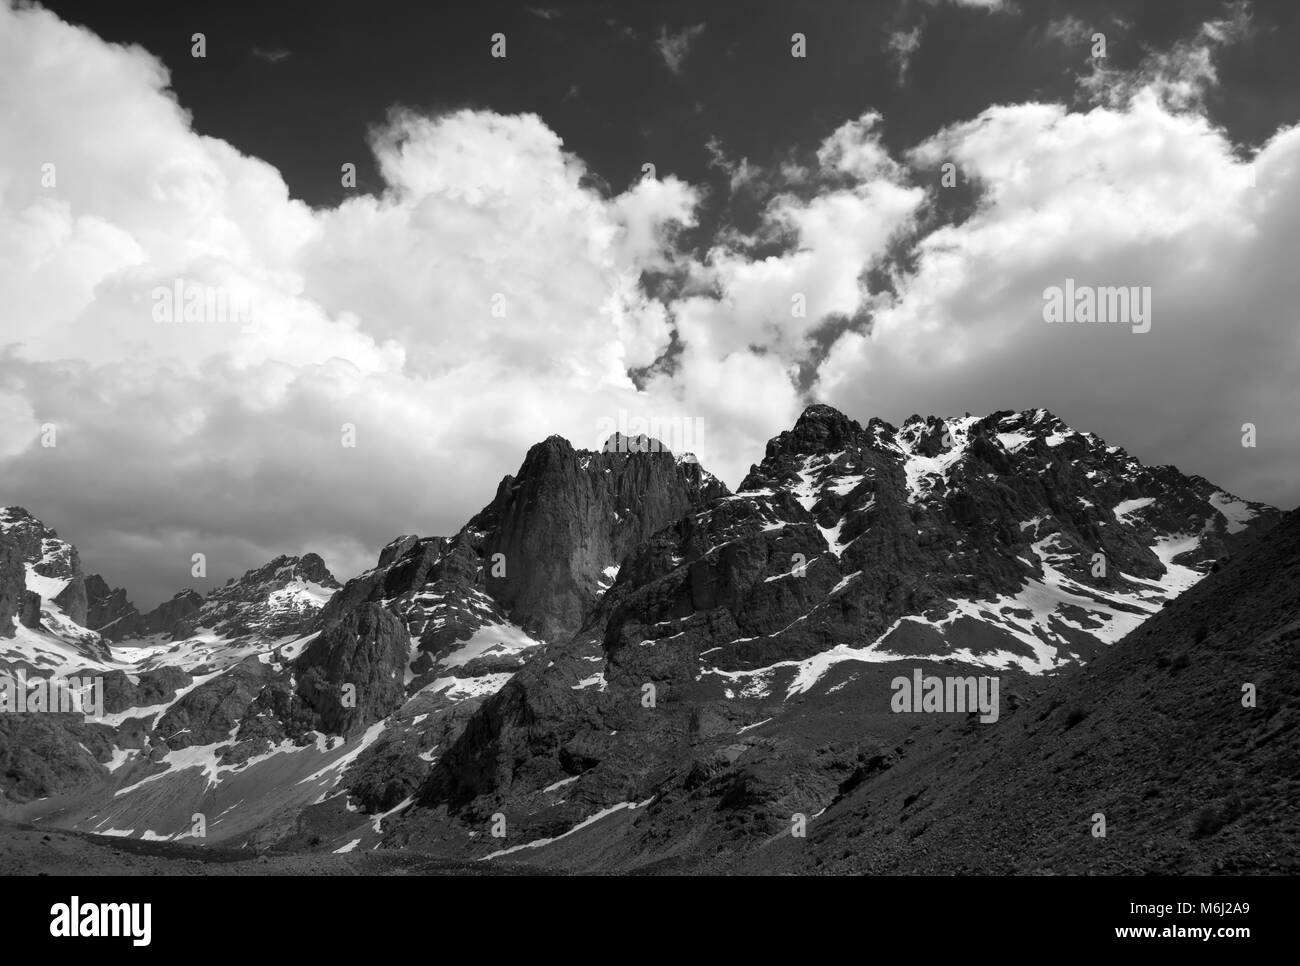 Le noir et blanc des montagnes et le ciel avec des nuages à nice 24. La Turquie, le Centre de la chaîne du Taurus. Aladaglar (taurus), la vallée de Moore. Banque D'Images